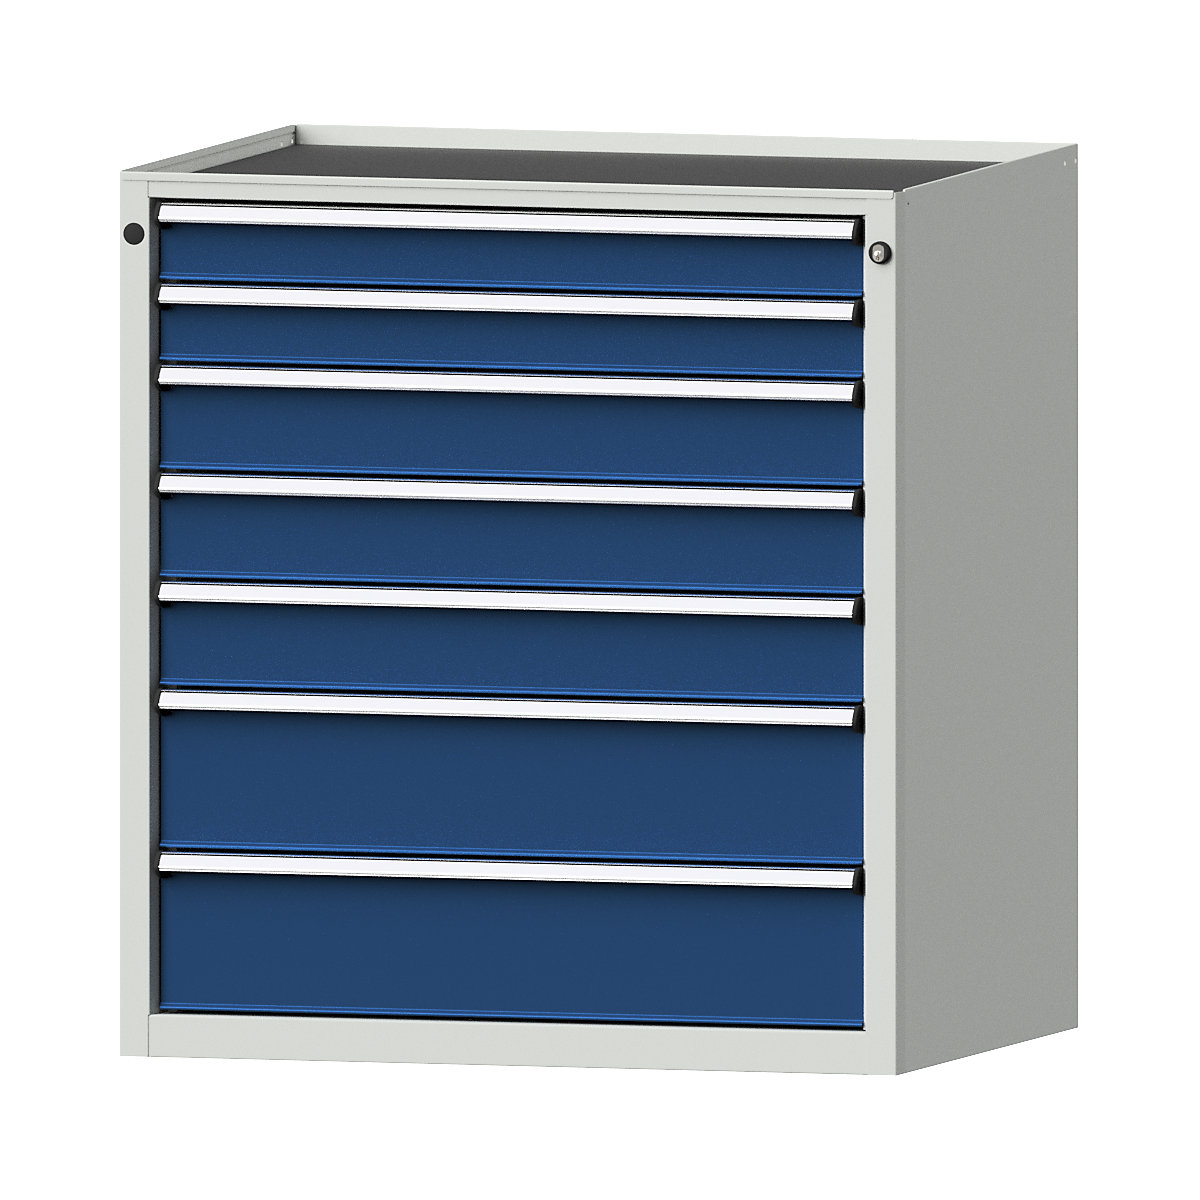 Armoire à tiroirs – ANKE, l x p 910 x 675 mm, charge max. tiroirs 200 kg, 7 tiroirs, hauteur 980 mm, façade bleu gentiane-10